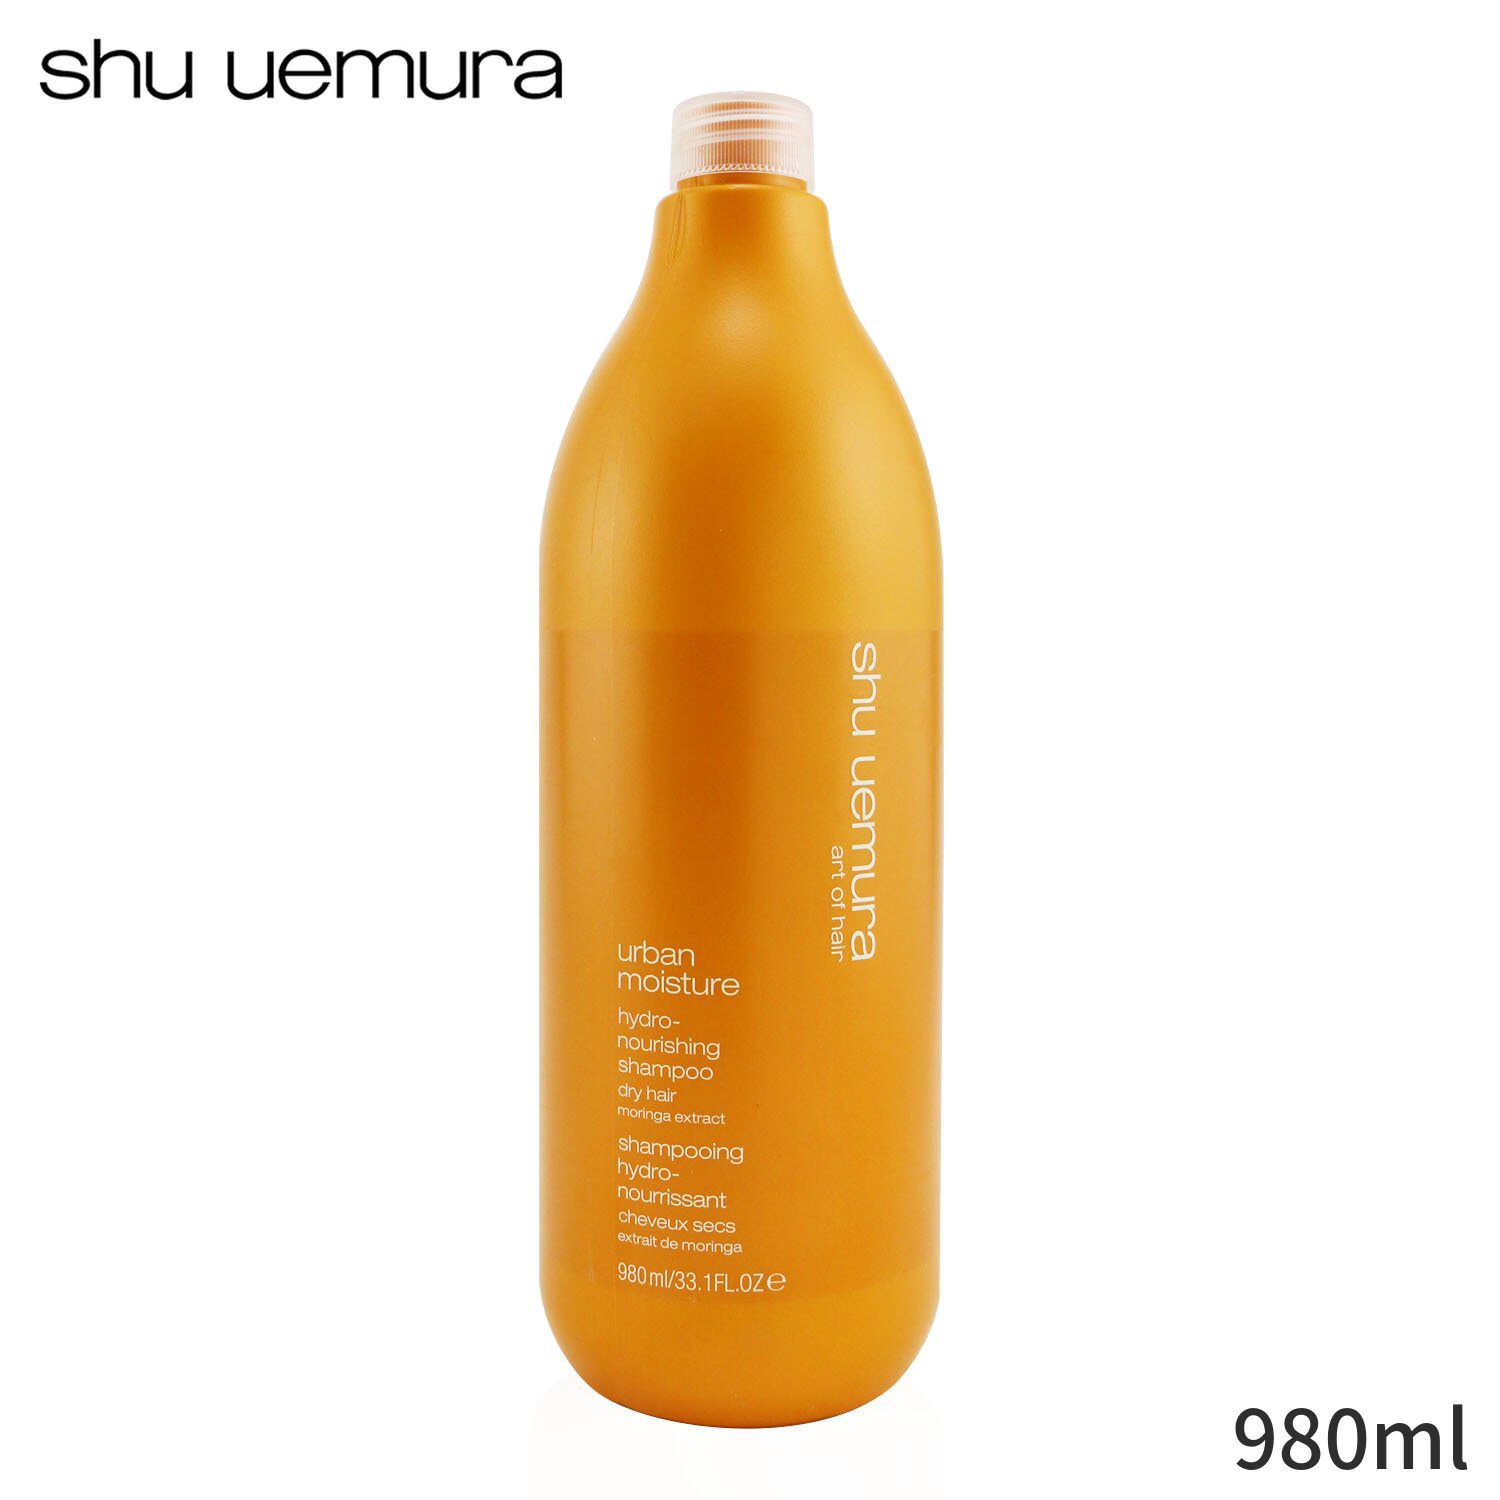 シュウウエムラ シャンプー コスメ 化粧品 海外直送 Shu Uemura Urban Moisture ヘアケア ギフト お気に入り 低価格化 人気 Shampoo 誕生日プレゼント 980ml Hydro-Nourishing Hair Dry